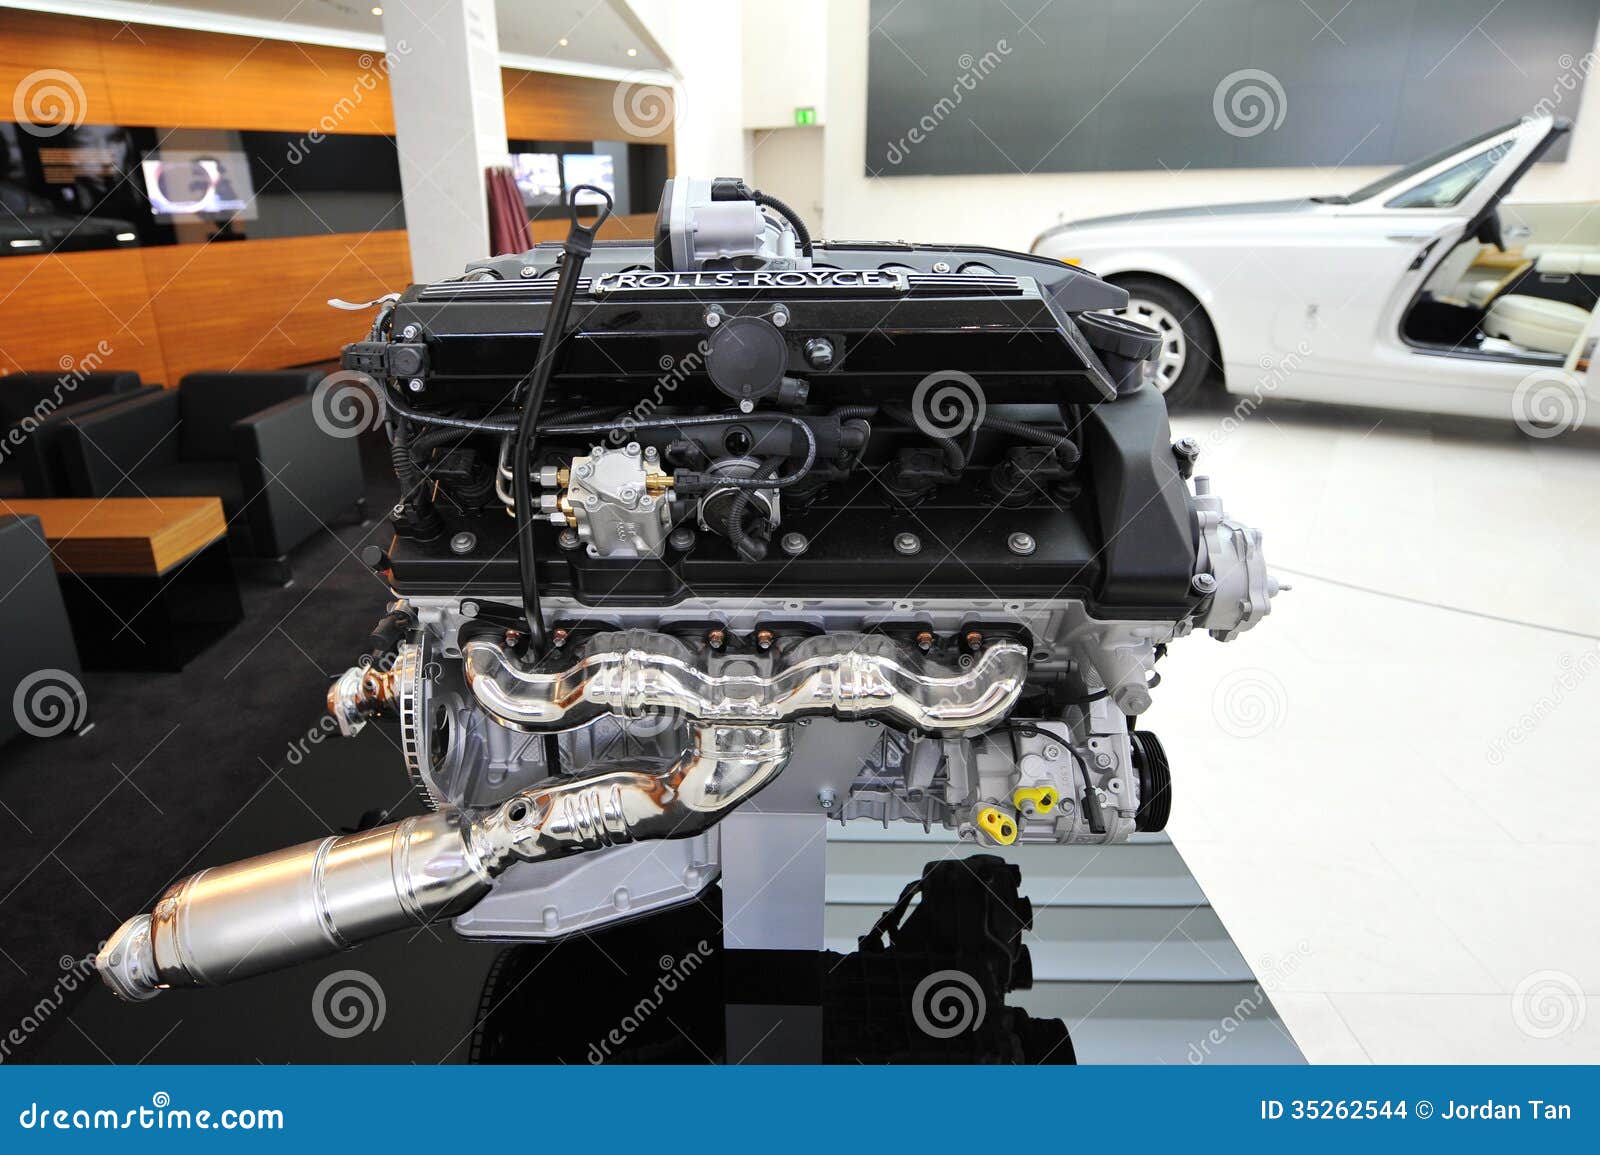 Rolls royce bmw v12 engine #5